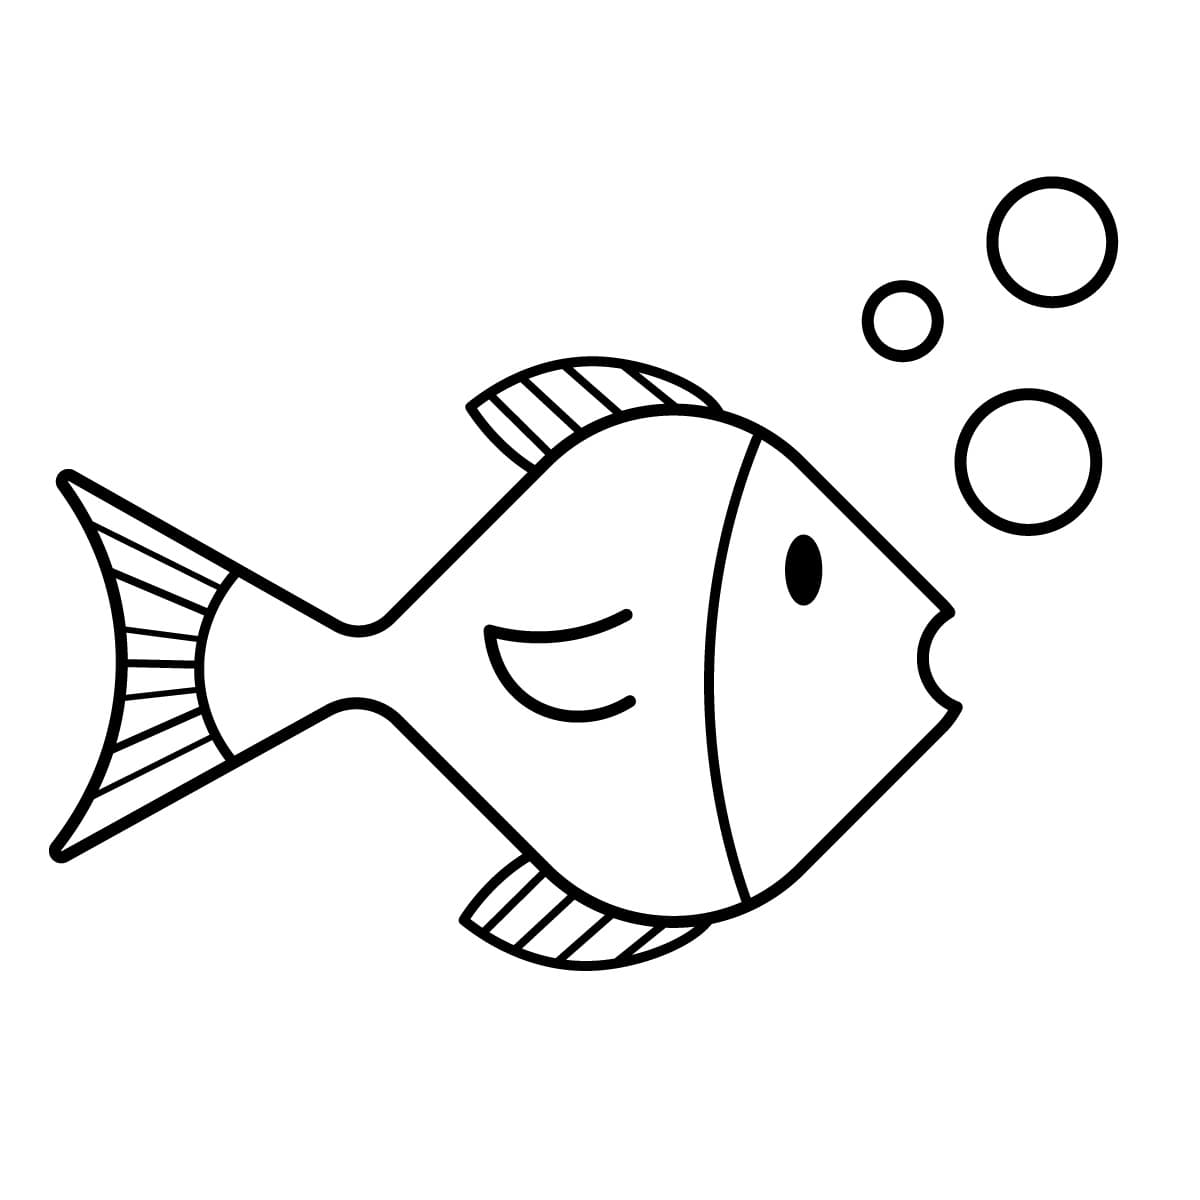 Dibujo de pez (peces) para colorear e imprimir - Dibujos y colores